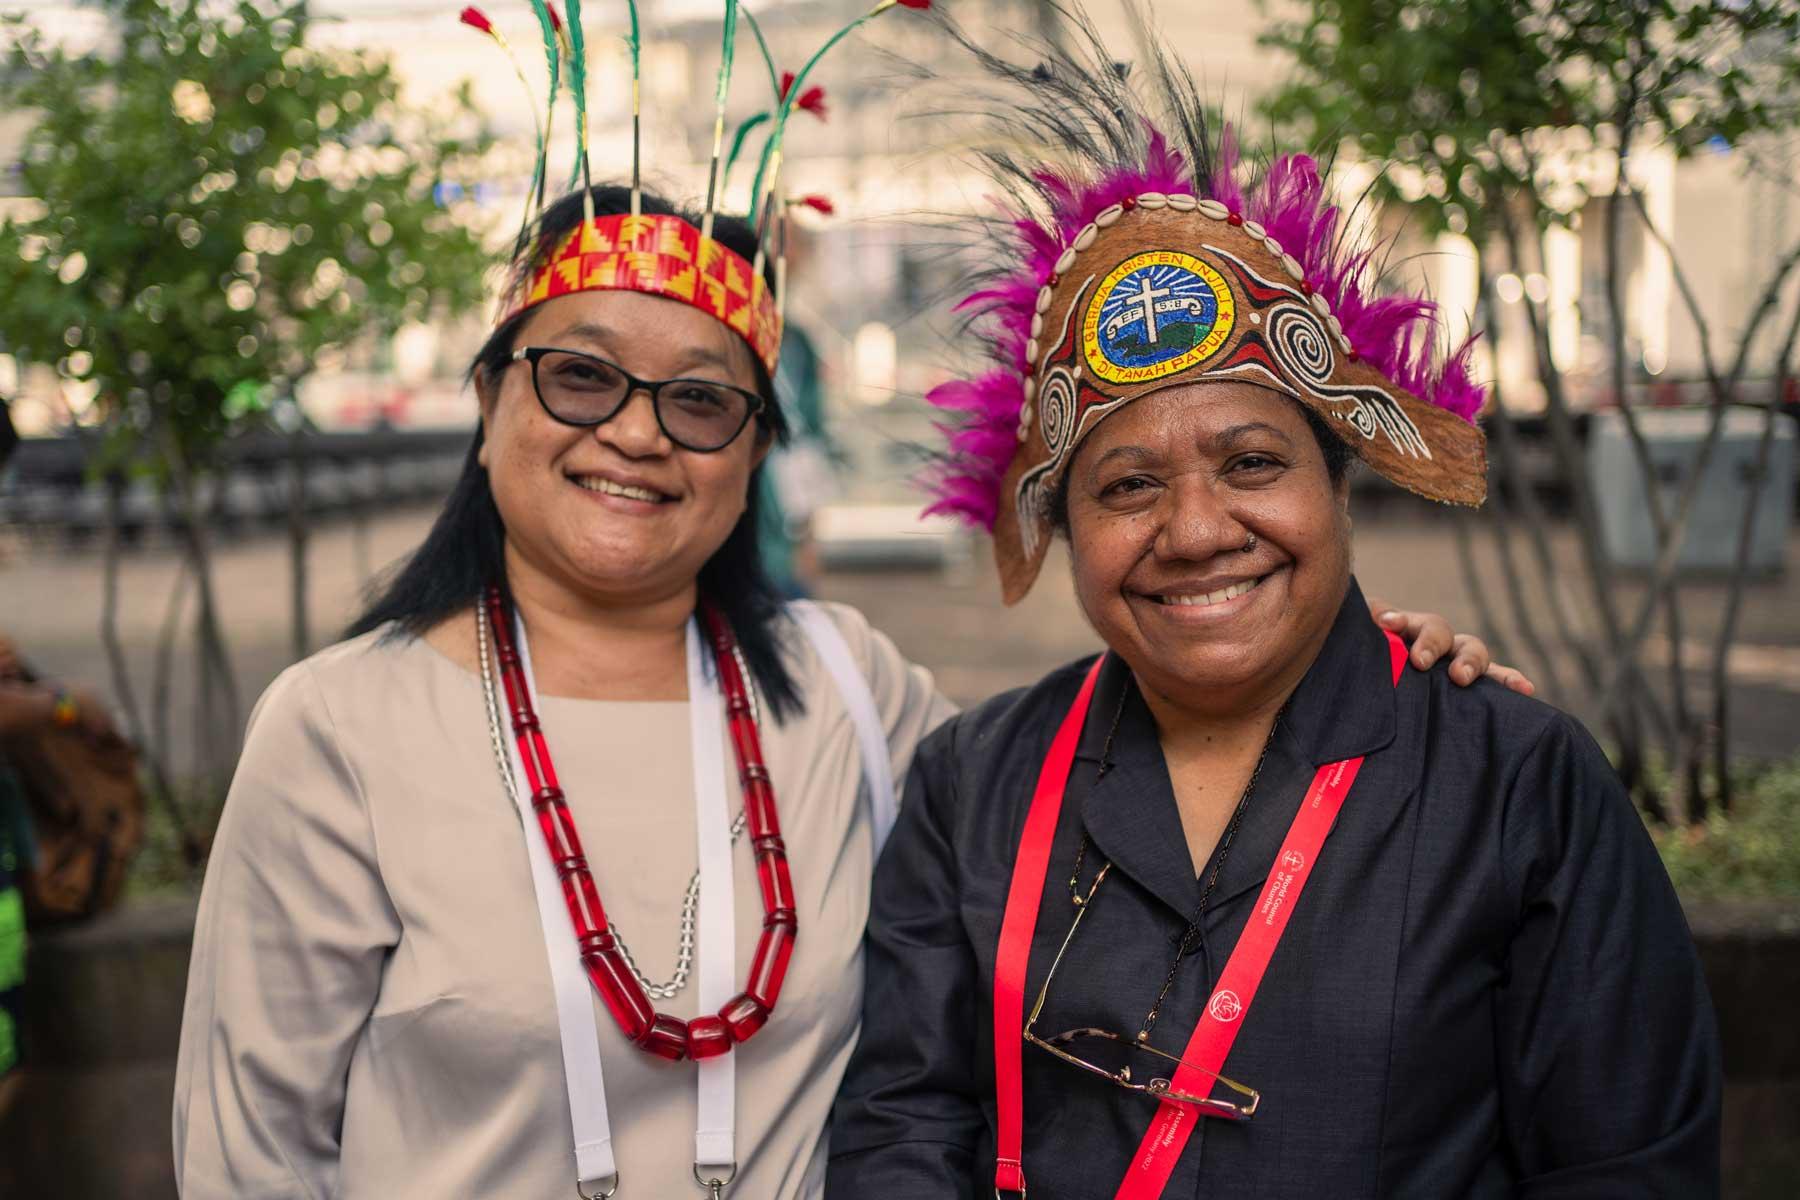 Das diesjährige Thema der Schöpfungszeit, "Höre auf die Stimme der Schöpfung", lädt die Teilnehmenden dazu ein, über die Stimmen derer nachzudenken, die zum Schweigen gebracht werden - darunter auch die Stimmen der indigenen Völker und der Frauen. Foto: Sean Hawkey/ÖRK